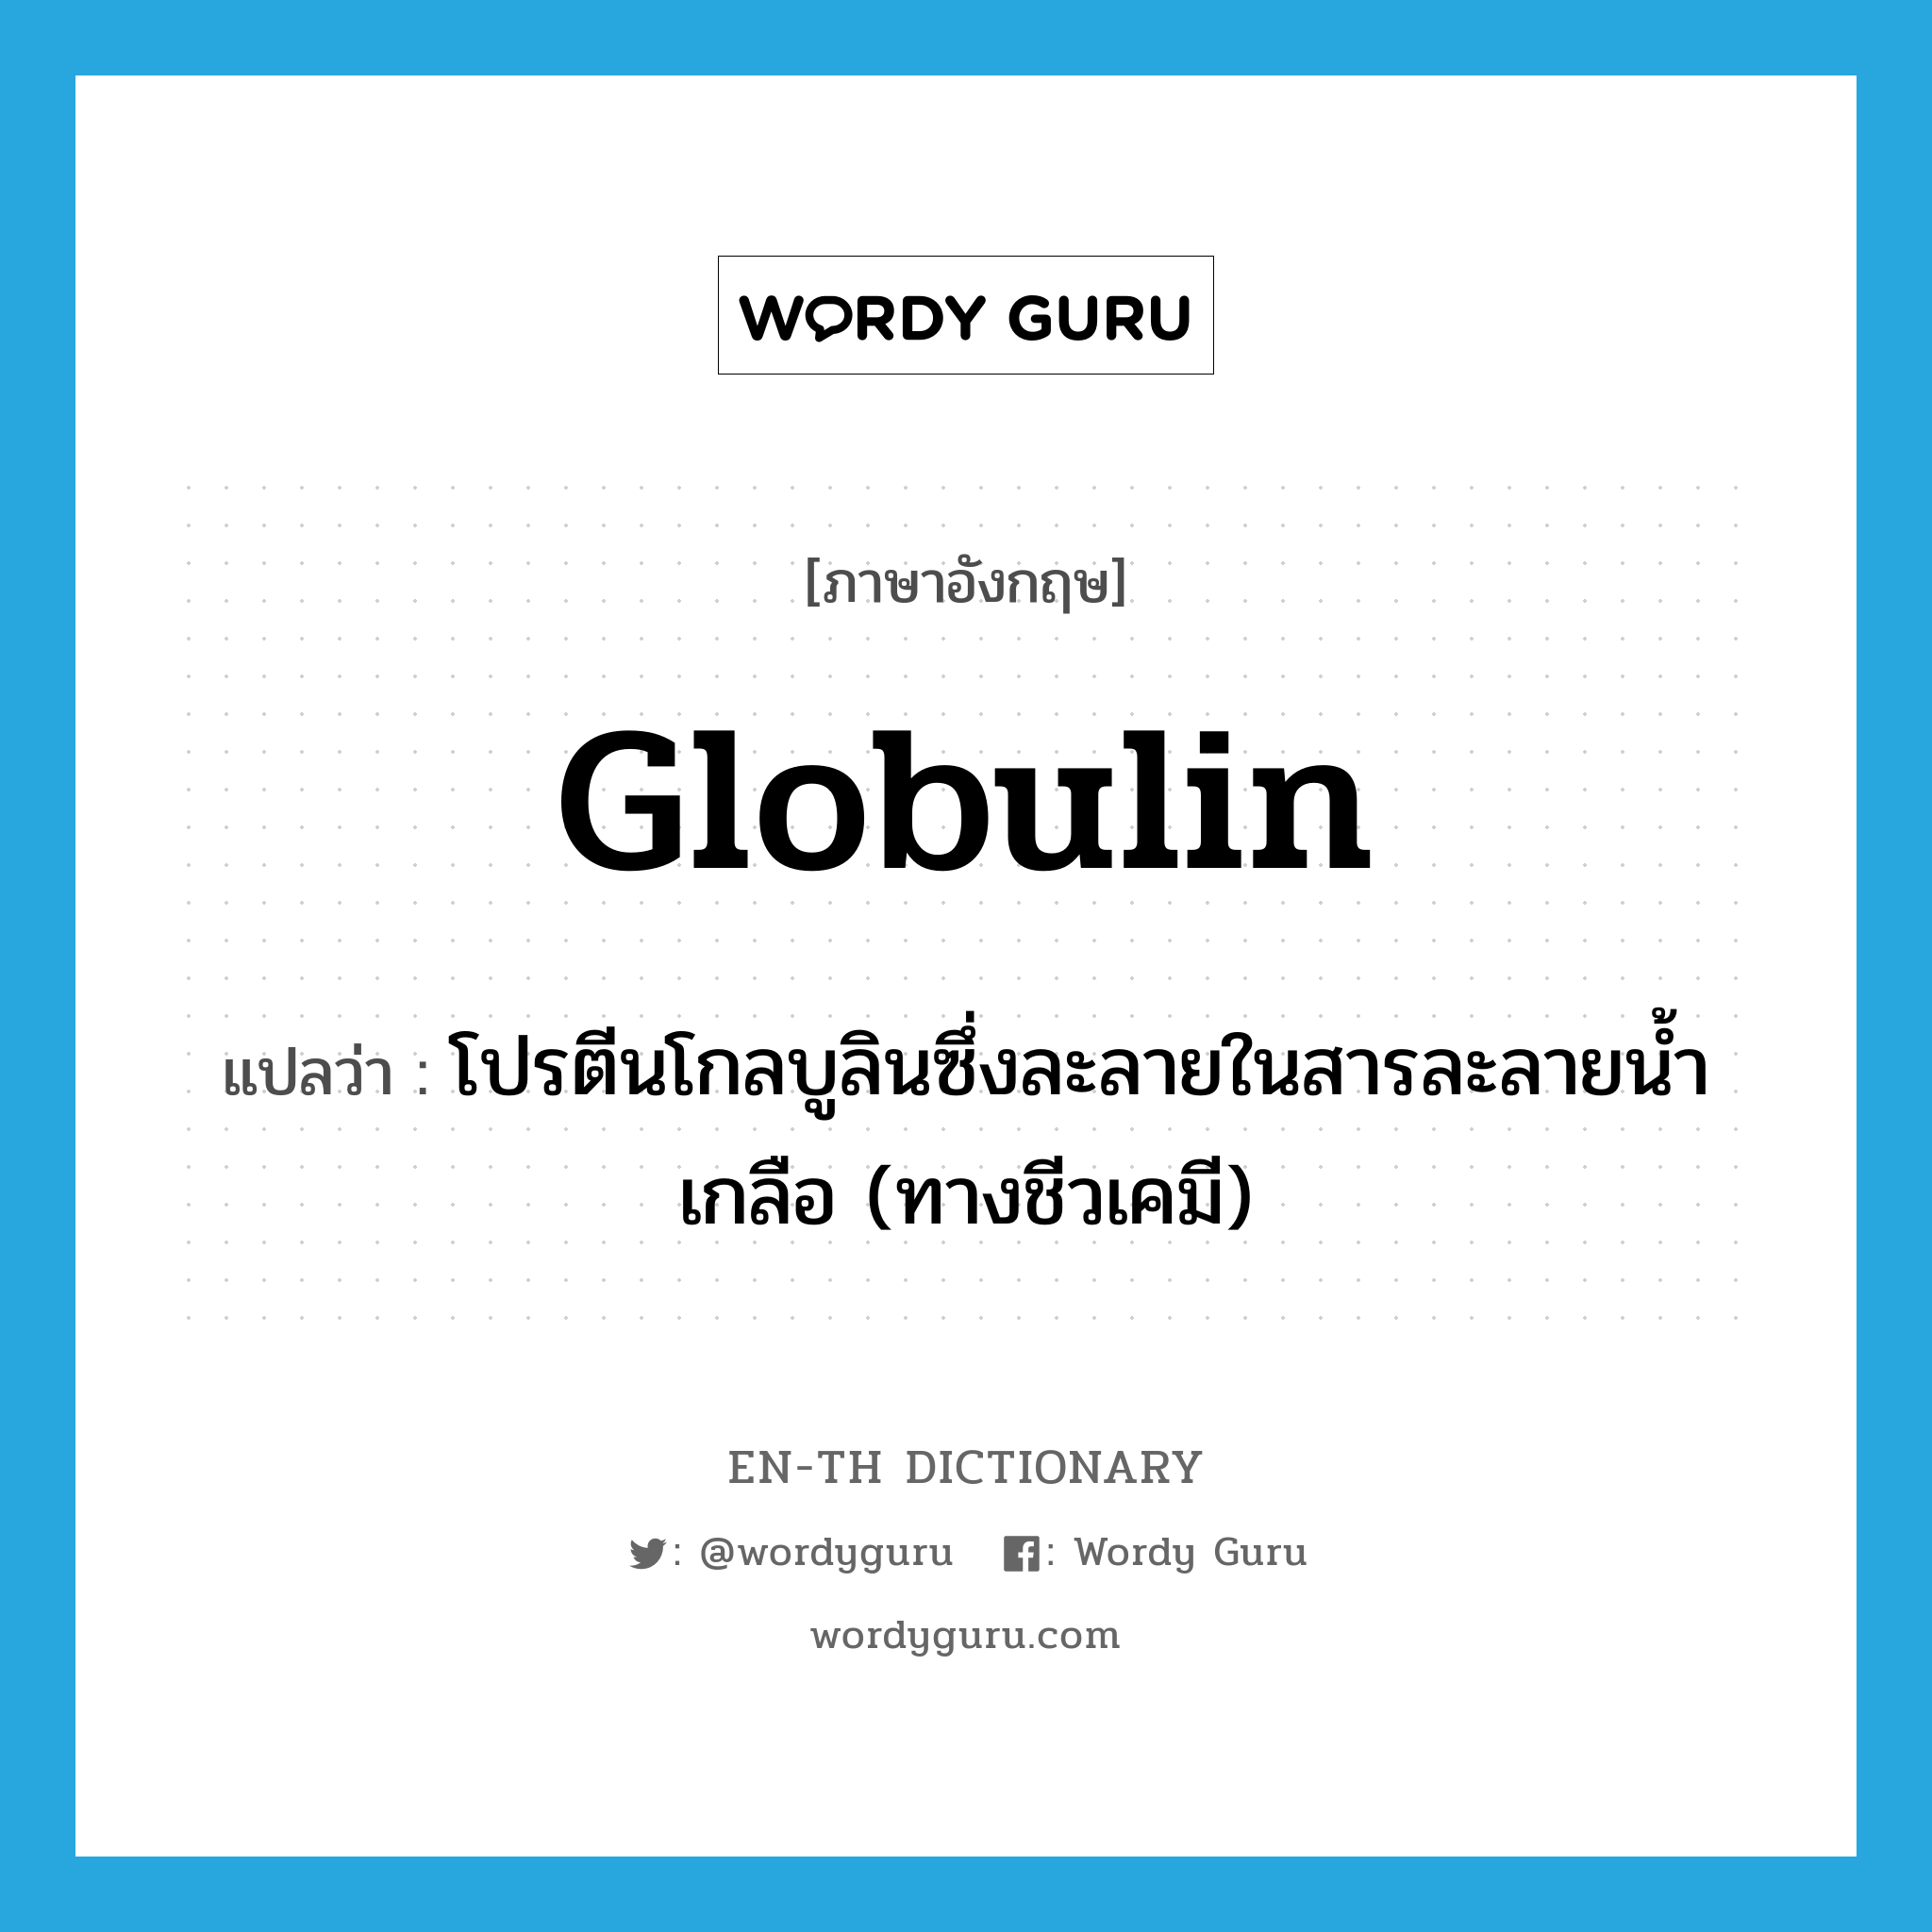 globulin แปลว่า?, คำศัพท์ภาษาอังกฤษ globulin แปลว่า โปรตีนโกลบูลินซึ่งละลายในสารละลายน้ำเกลือ (ทางชีวเคมี) ประเภท N หมวด N